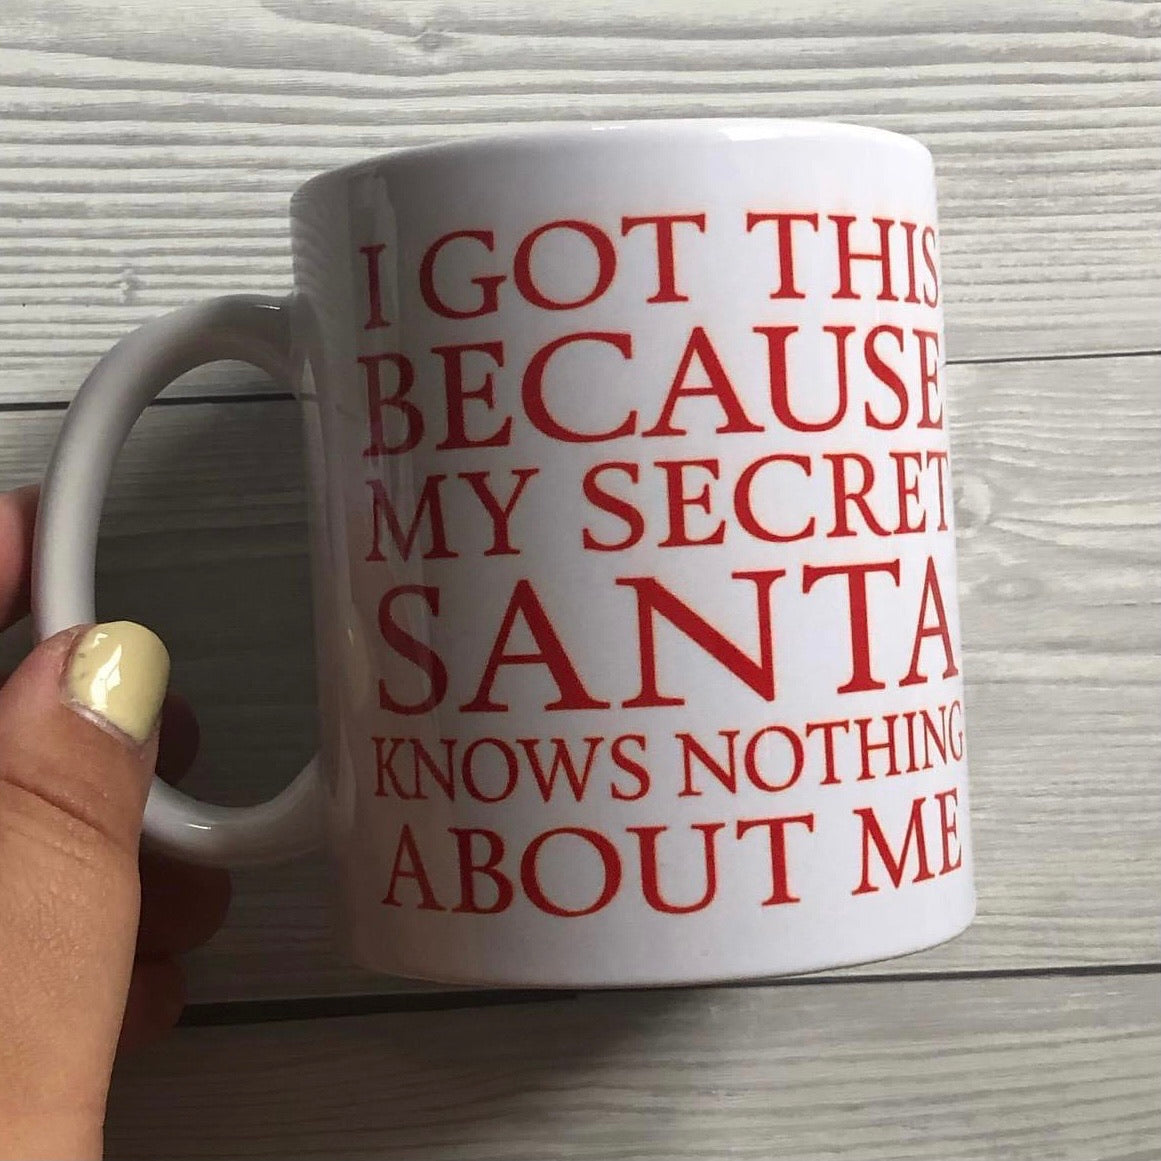 Secret Santa mug